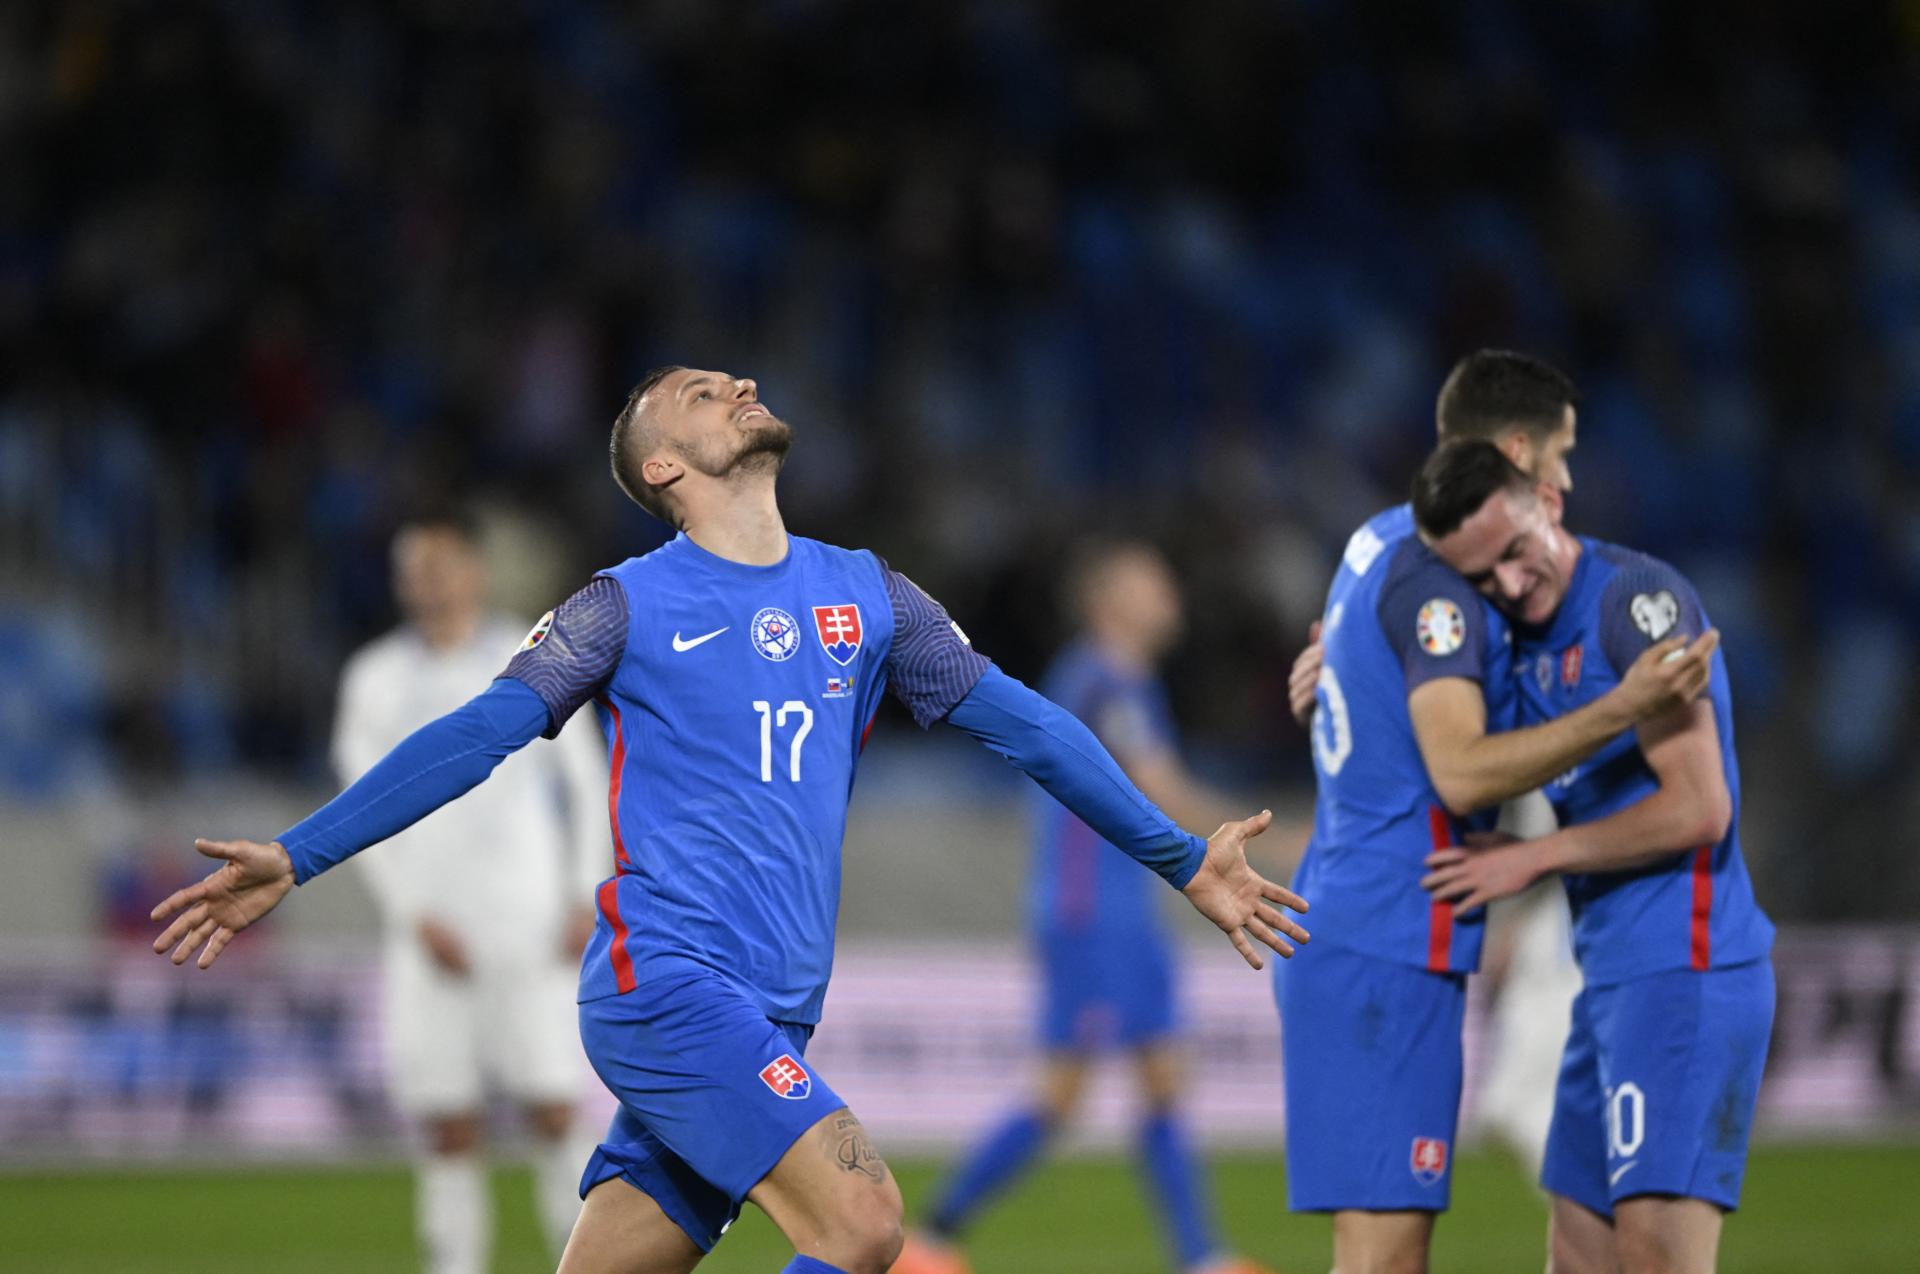 Konečne pozitívna repre emócia. Slováci po kvalitnom výkone doma zdolali Bosniakov 2:0